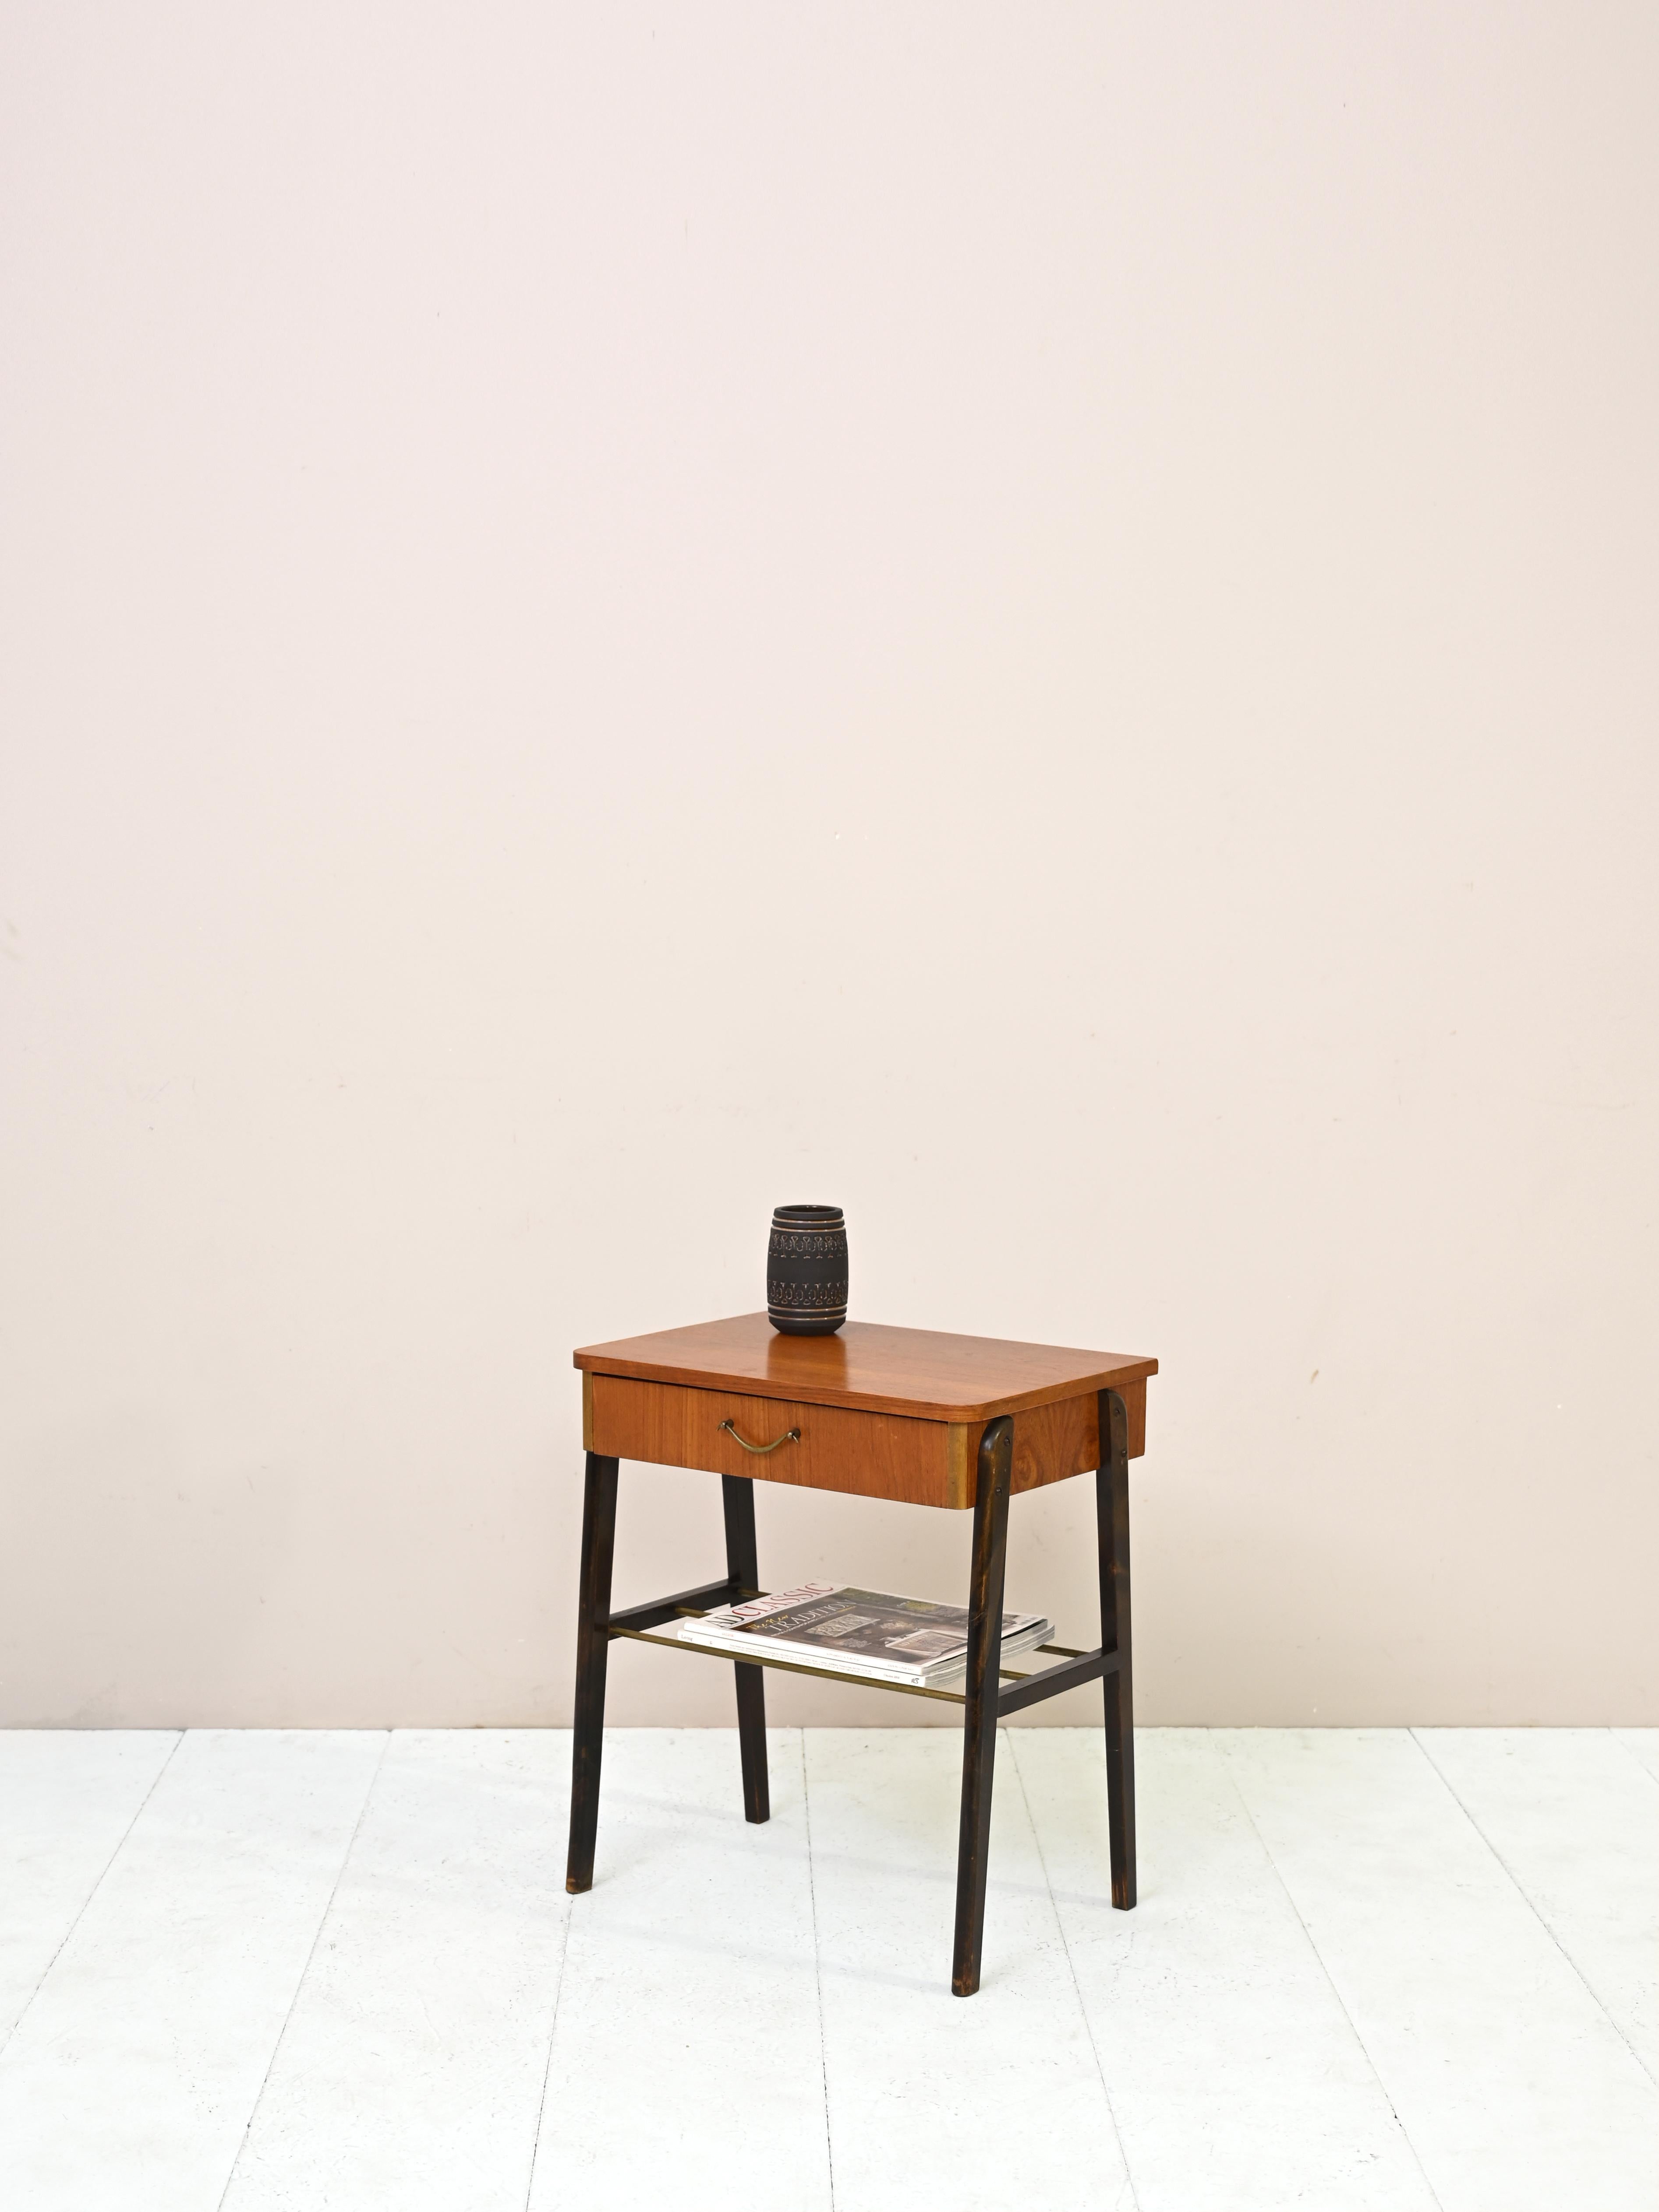 Table de nuit scandinave vintage particulièrement originale.
Un meuble qui se distingue par ses lignes modernes avec une touche rétro. Le dessus est en teck tandis que
les pieds en bois peints donnent du caractère à la structure. La poignée du